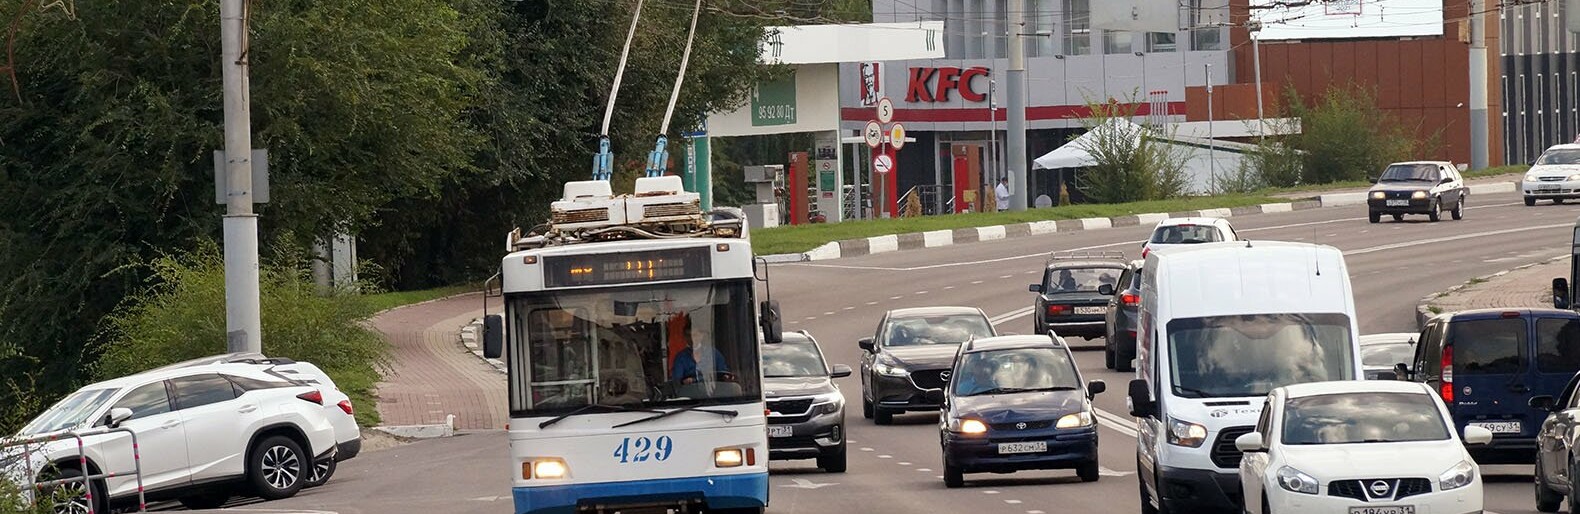 Белгородские власти готовы заняться возвращением троллейбусов при федеральной поддержке